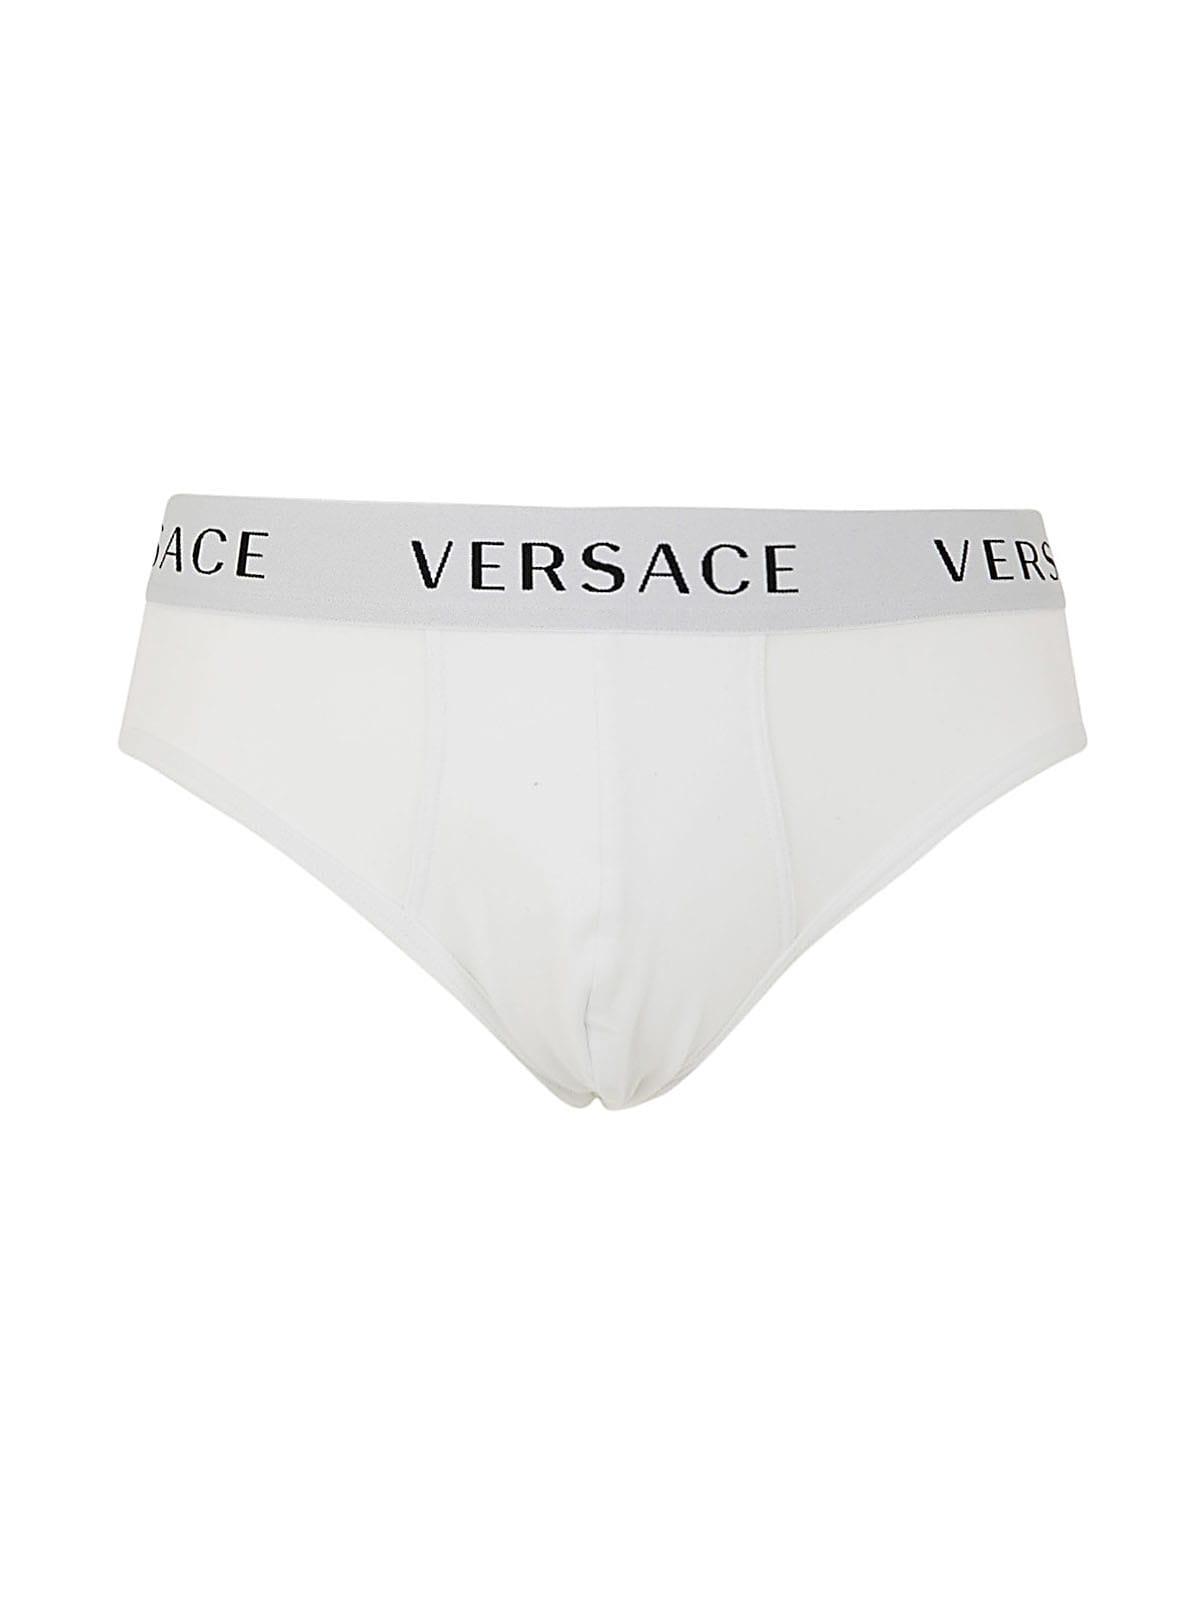 for Men Mens Underwear Versace Underwear Versace Mens Underwear & Swimwear in Black White Black Save 38% 